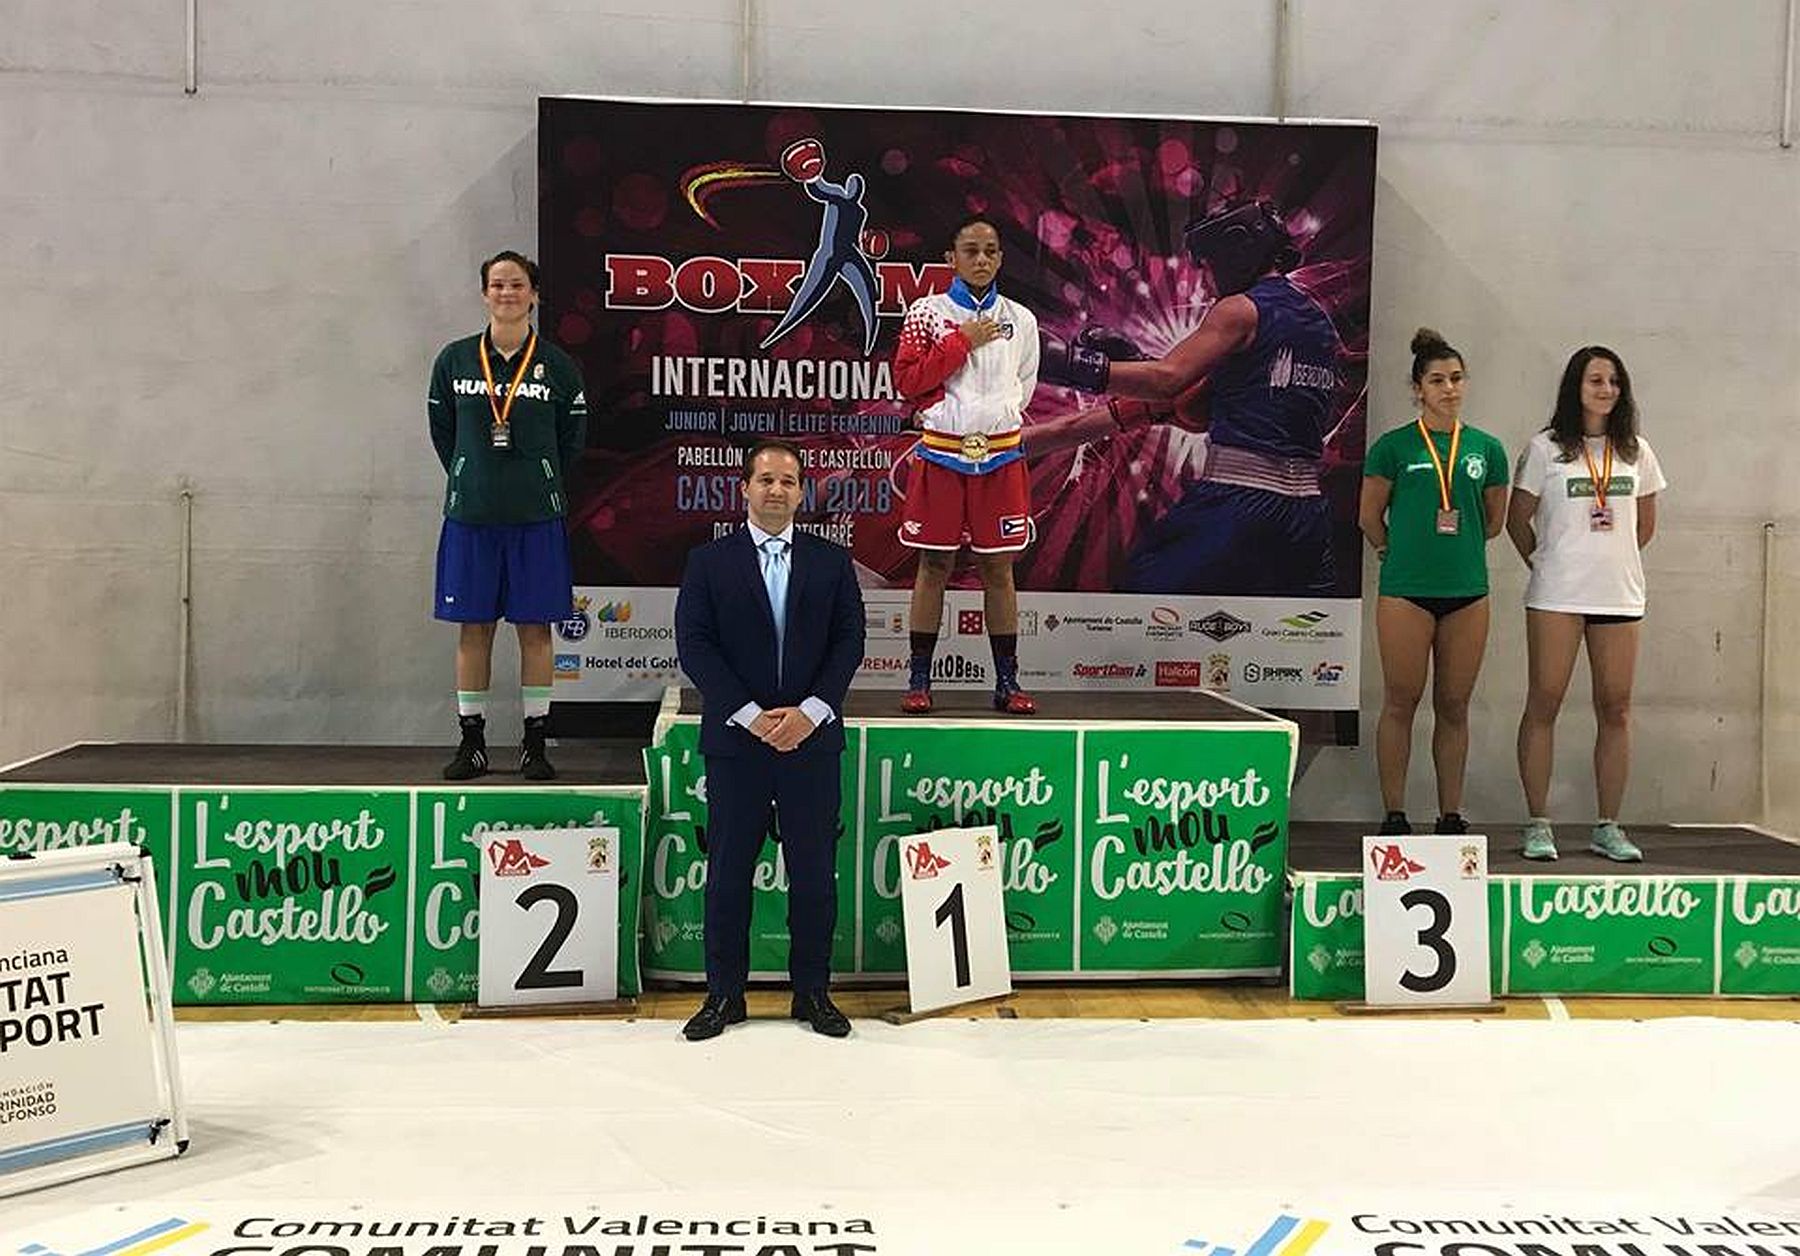 Ezüstérmes lett Valenciában Nagy Angi, a Videoton Box Club válogatott ökölvívója